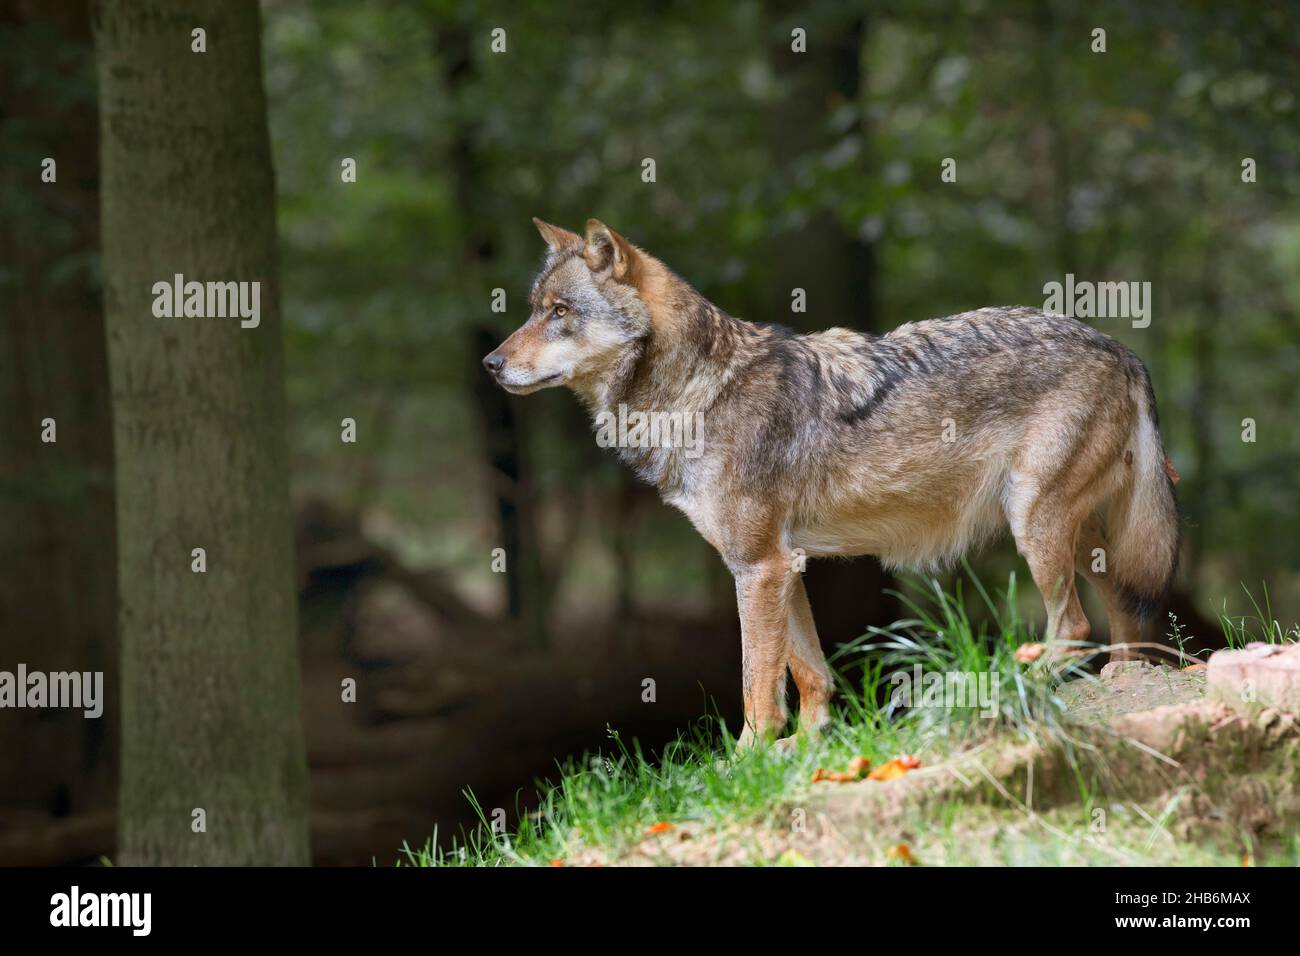 Lobo gris europeo (Canis lupus lupus), se encuentra en el borde del bosque, Alemania Foto de stock